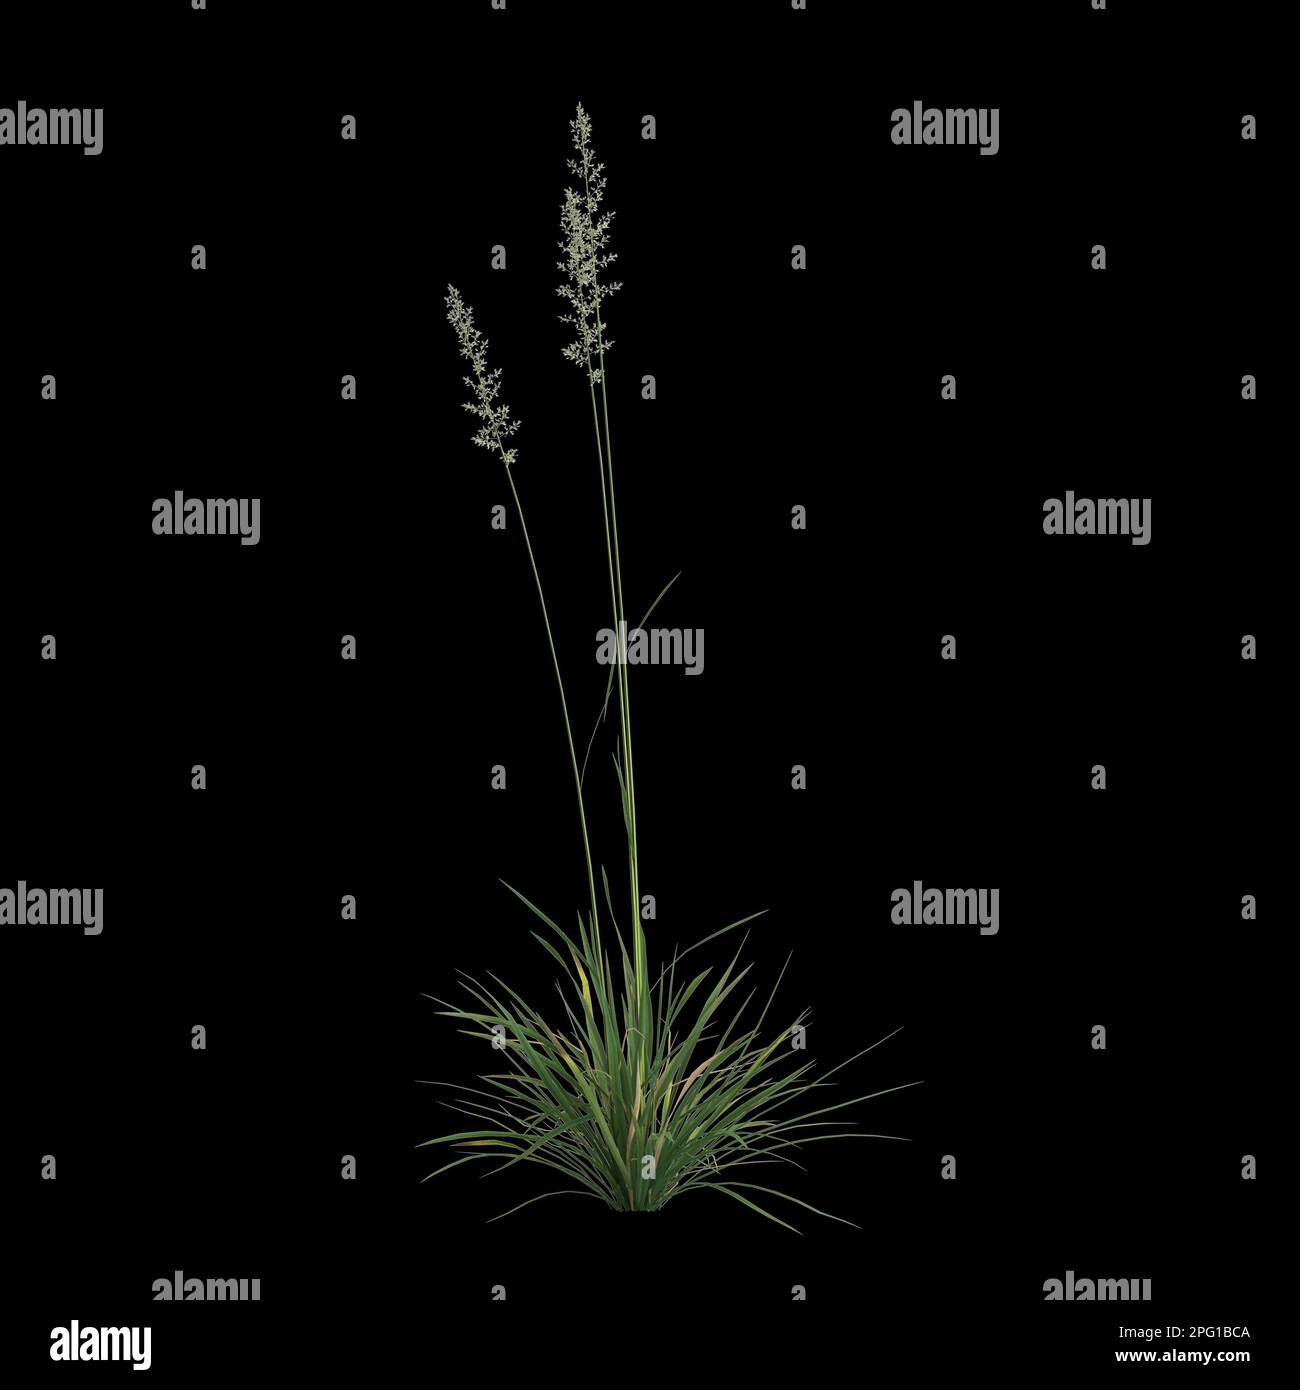 3d illustration of koeleria macrantha bush isolated on black background Stock Photo